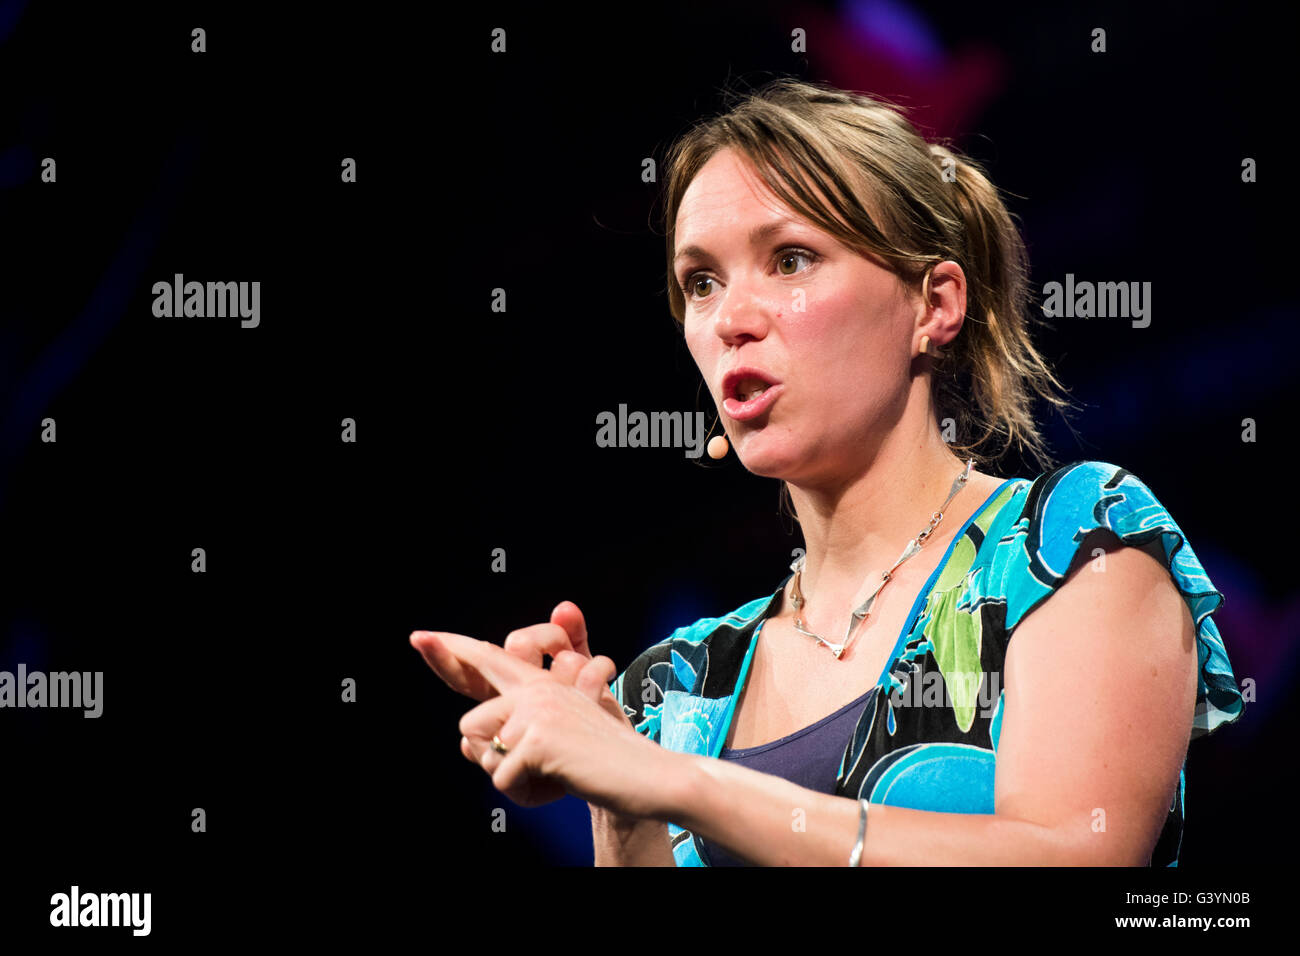 Dr Anne Critchlow, neuroscientifique, Cambridge, présentateur de télévision scolaire, sciences popularist, parlant sur scène à l'Hay Festival, le samedi 28 mai 2016 Banque D'Images